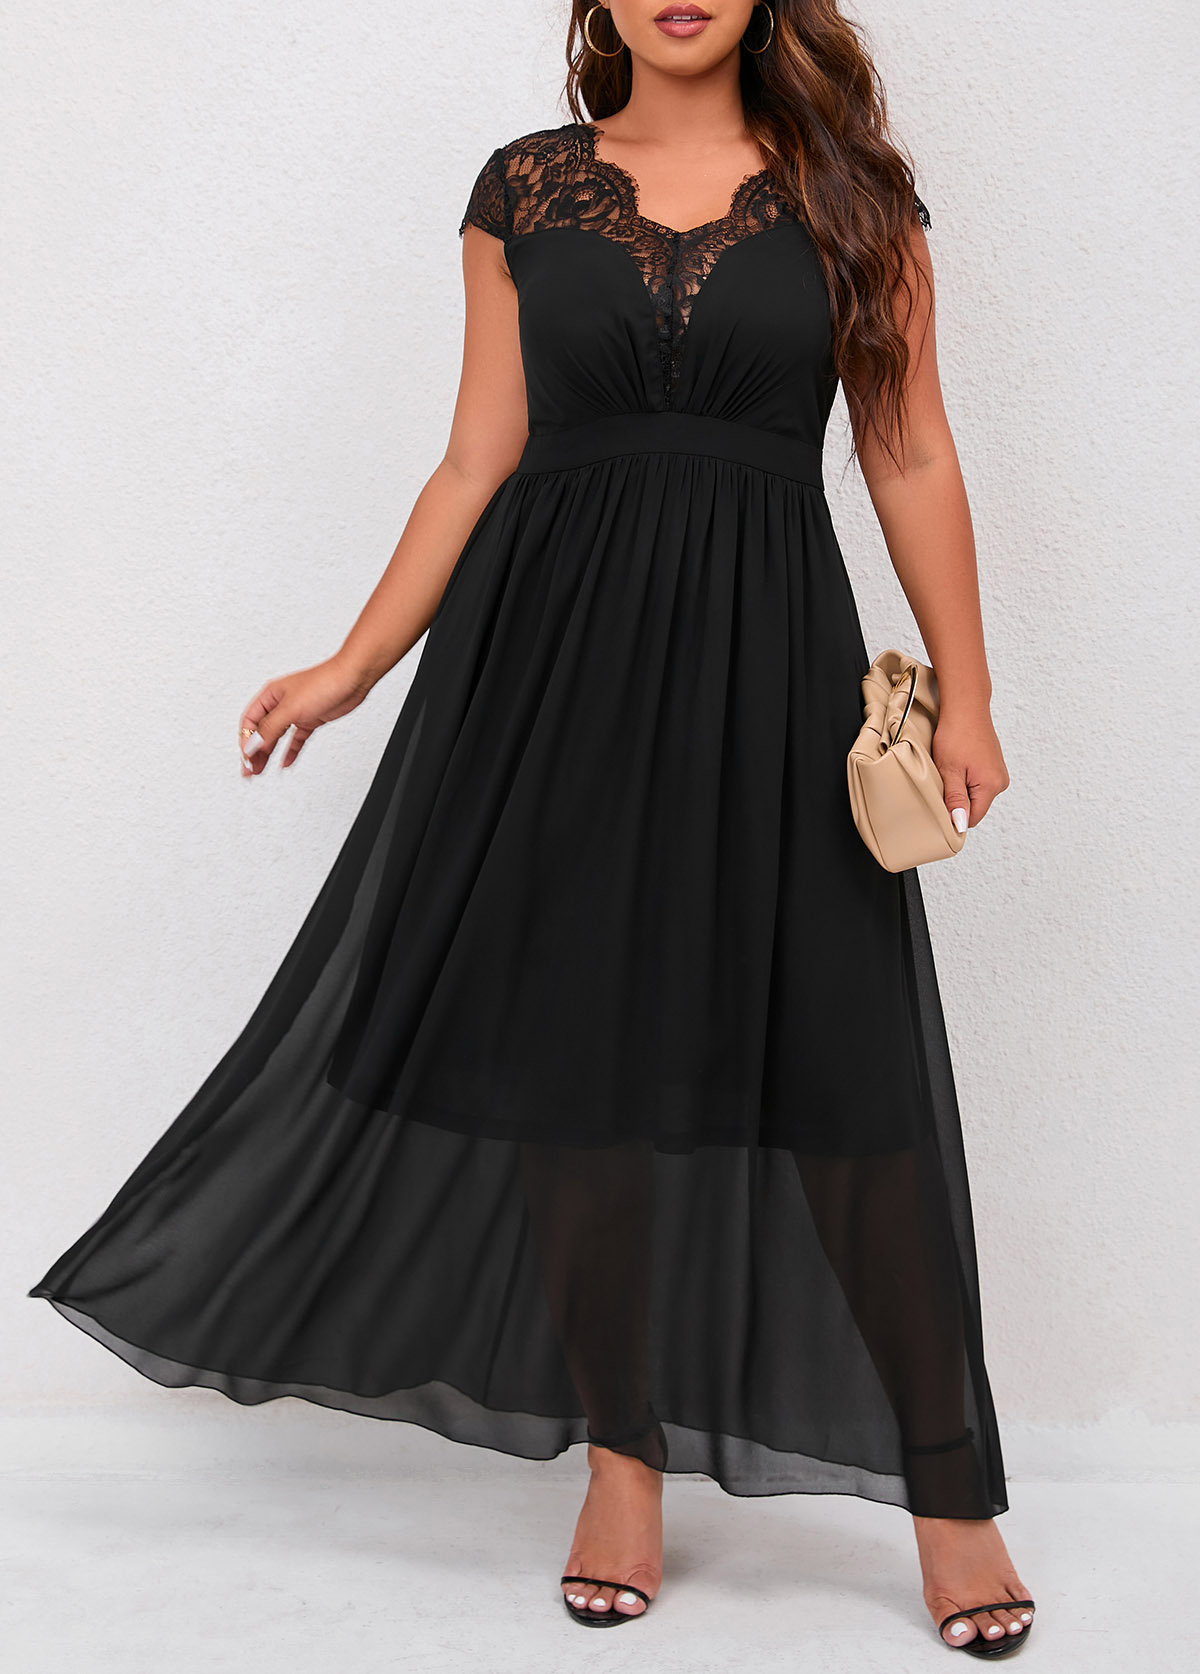 Black Lace Patchwork Plus Size Dress